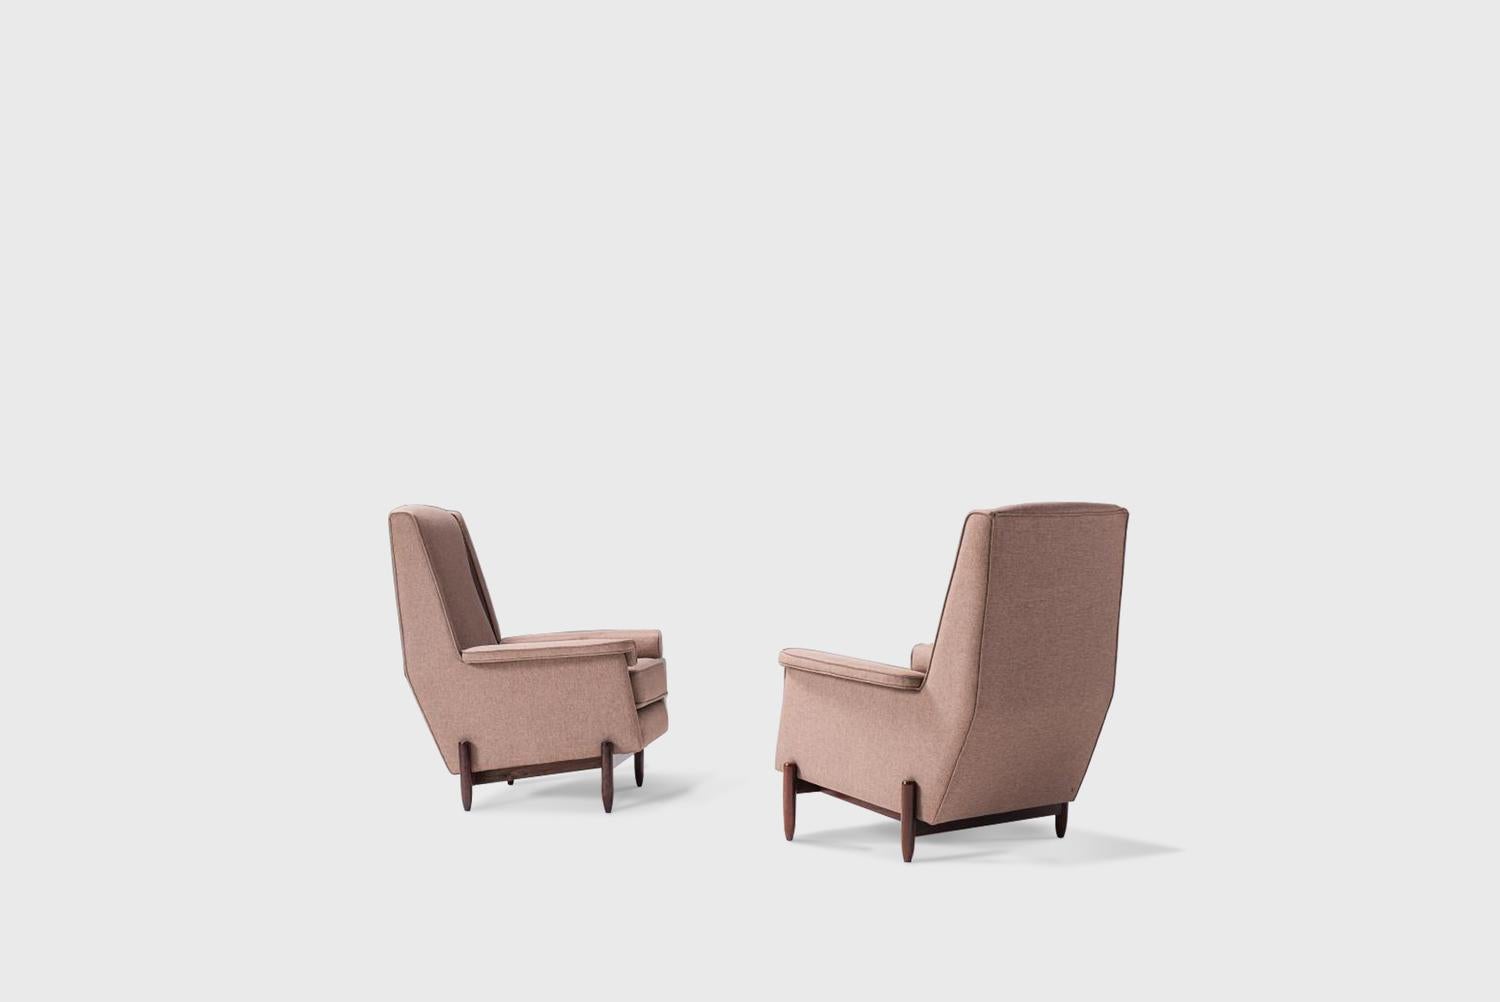 Paire de fauteuils fabriqués par Móveis Cantu Brésil, années 1960 
Structures exécutées en jacaranda massif, corps rembourrés et sièges recouverts de tissu gris.
Dimensions : 74cmx 80cmx99hcm 29,2 in x 31,5 in x 39 h in